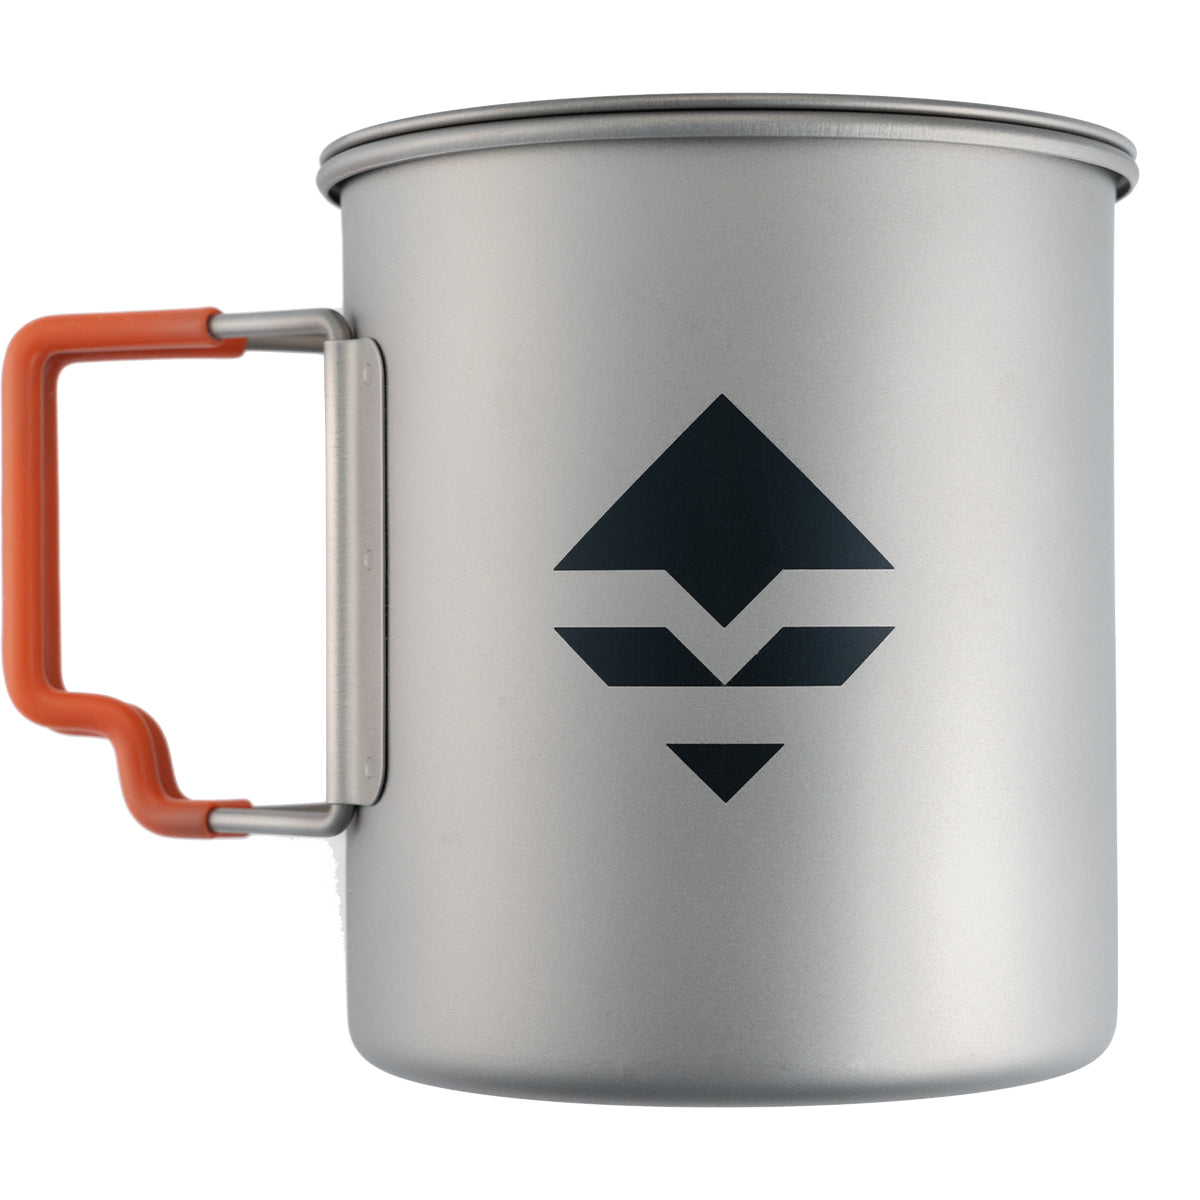 GOHUNT Titanium Mug in Gohunt titanium mug by GOHUNT | GOHUNT - GOHUNT Shop